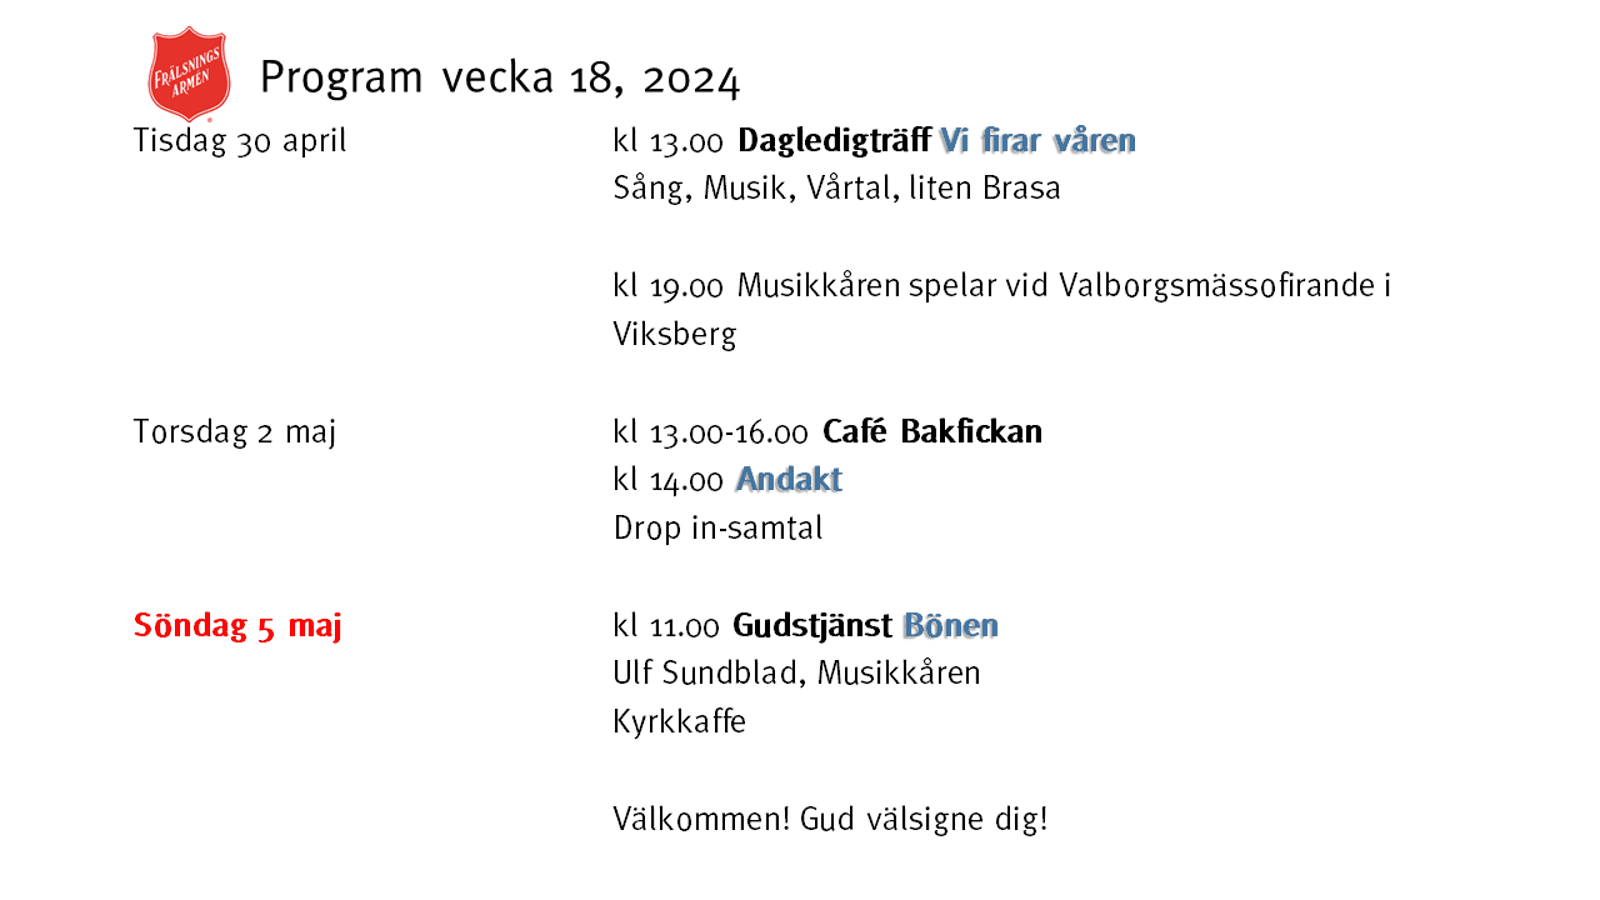 Program v 18, 2024